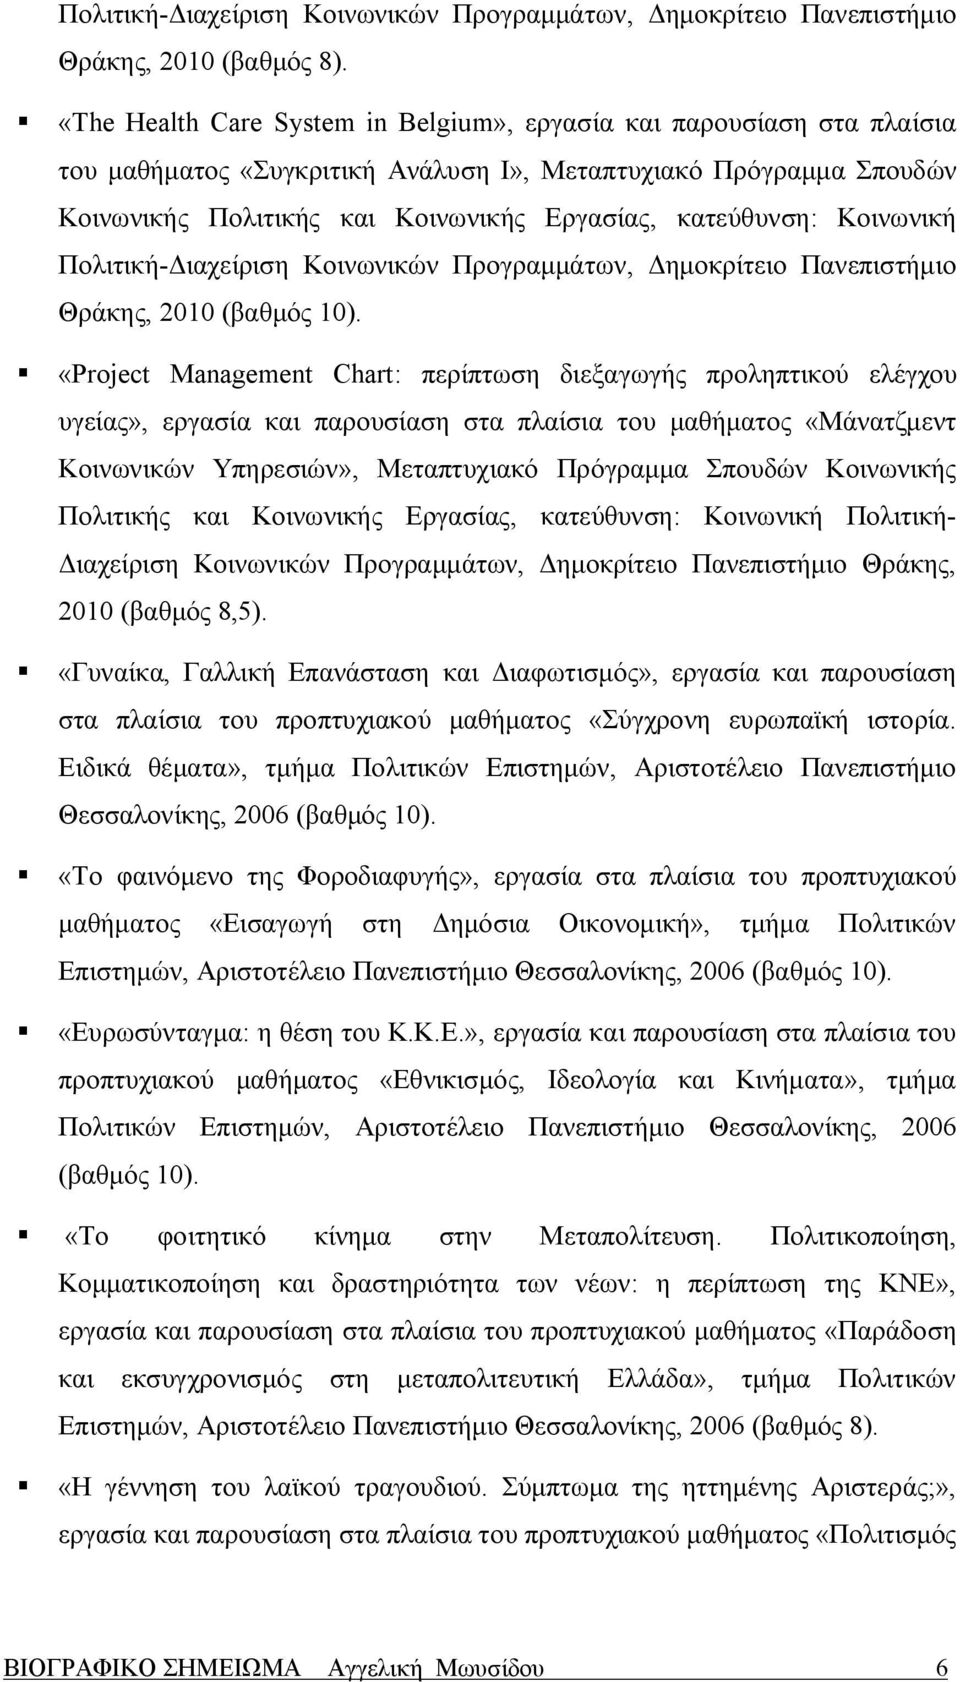 Κοινωνική Πολιτική-Διαχείριση Κοινωνικών Προγραμμάτων, Δημοκρίτειο Πανεπιστήμιο Θράκης, 2010 (βαθμός 10).